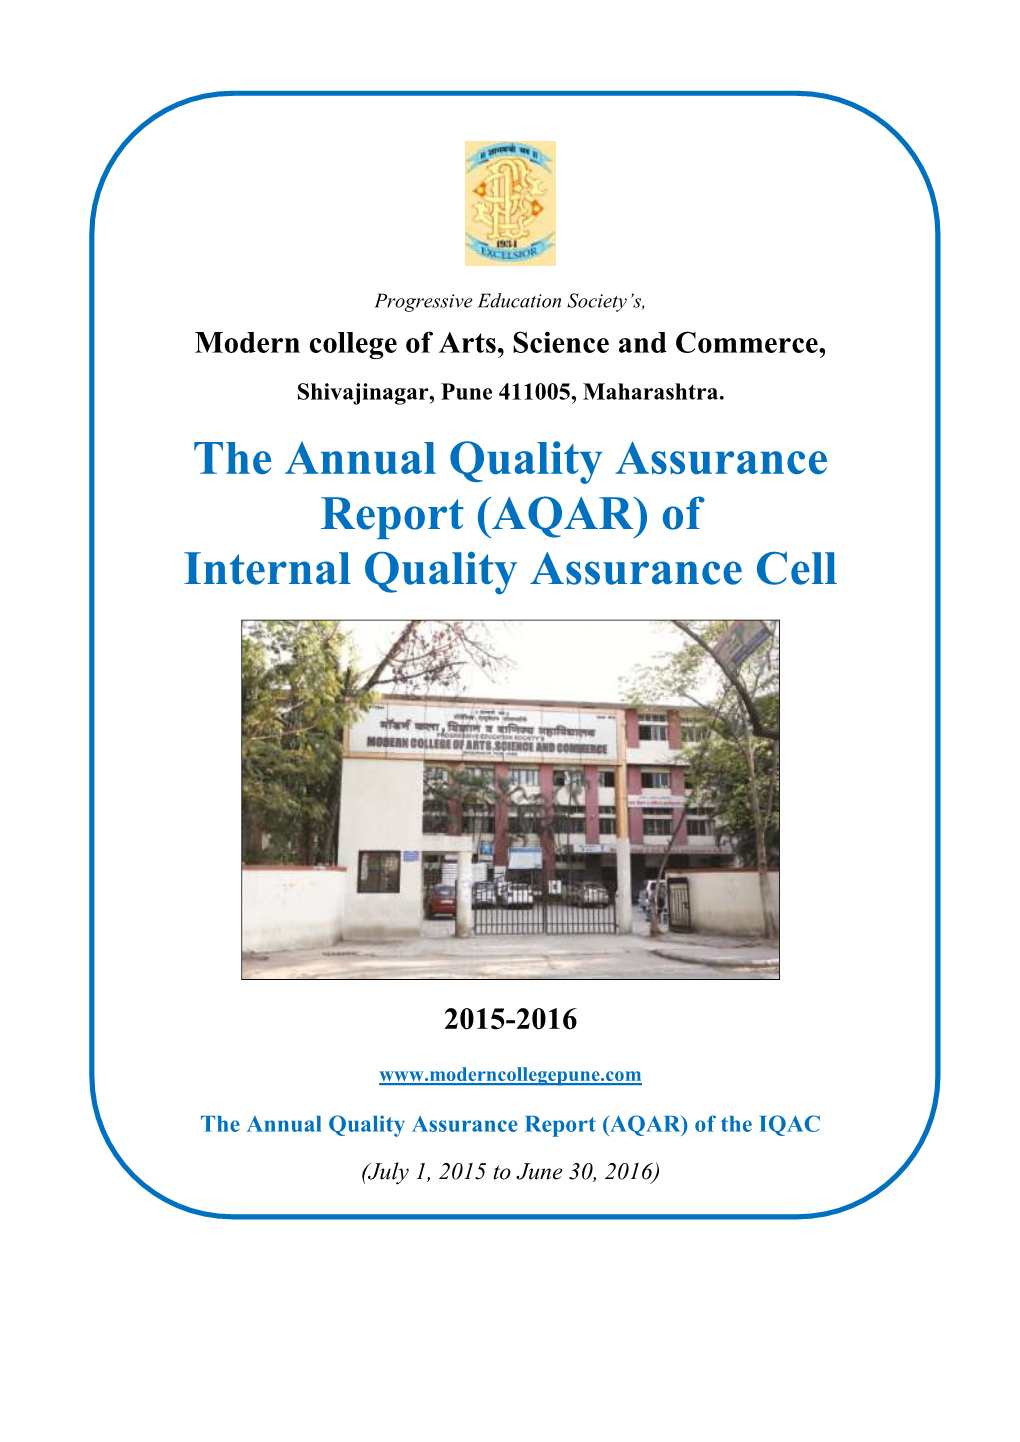 (AQAR) of Internal Quality Assurance Cell